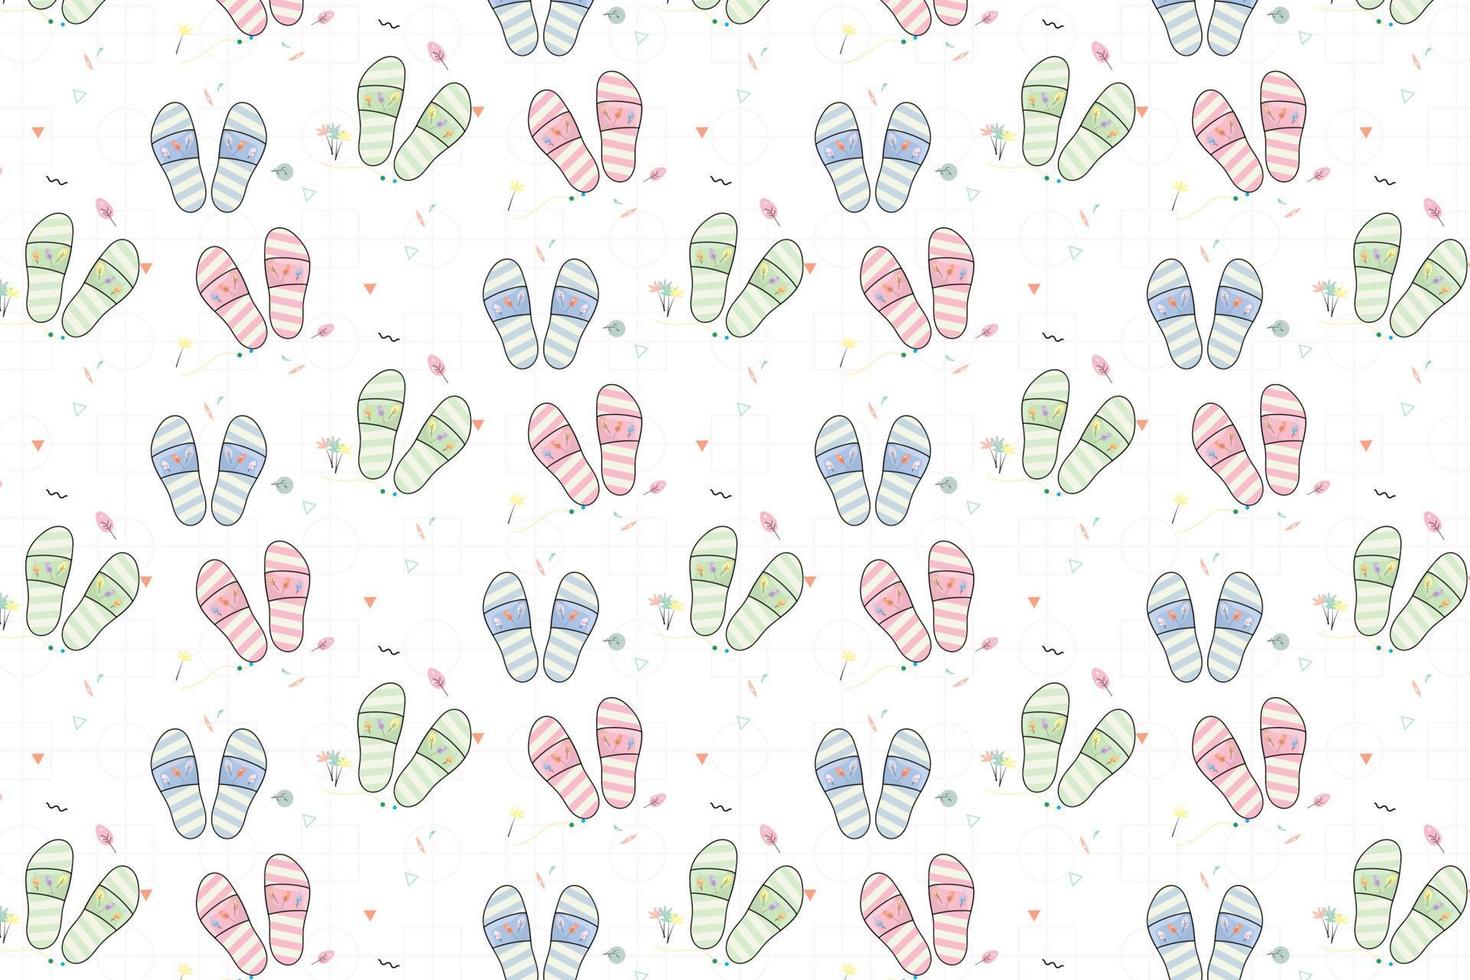 patroon met slippers in pastel tonen abstract patroon vector achtergrond voor ontwerp